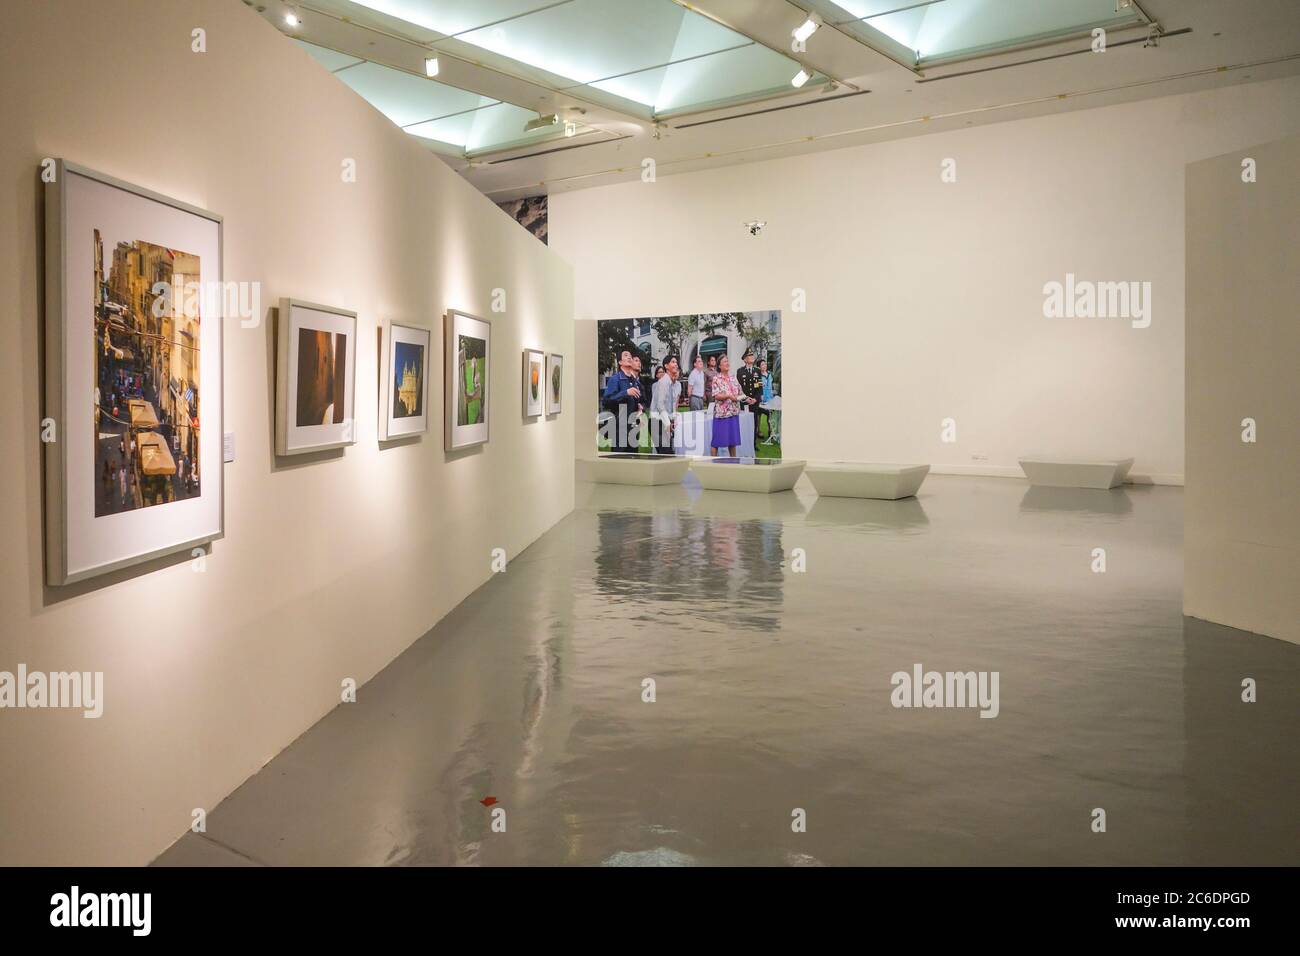 Bangkok Art and Culture Centre (BACC), interior, artwork on display, Bangkok, Thailand. Stock Photo